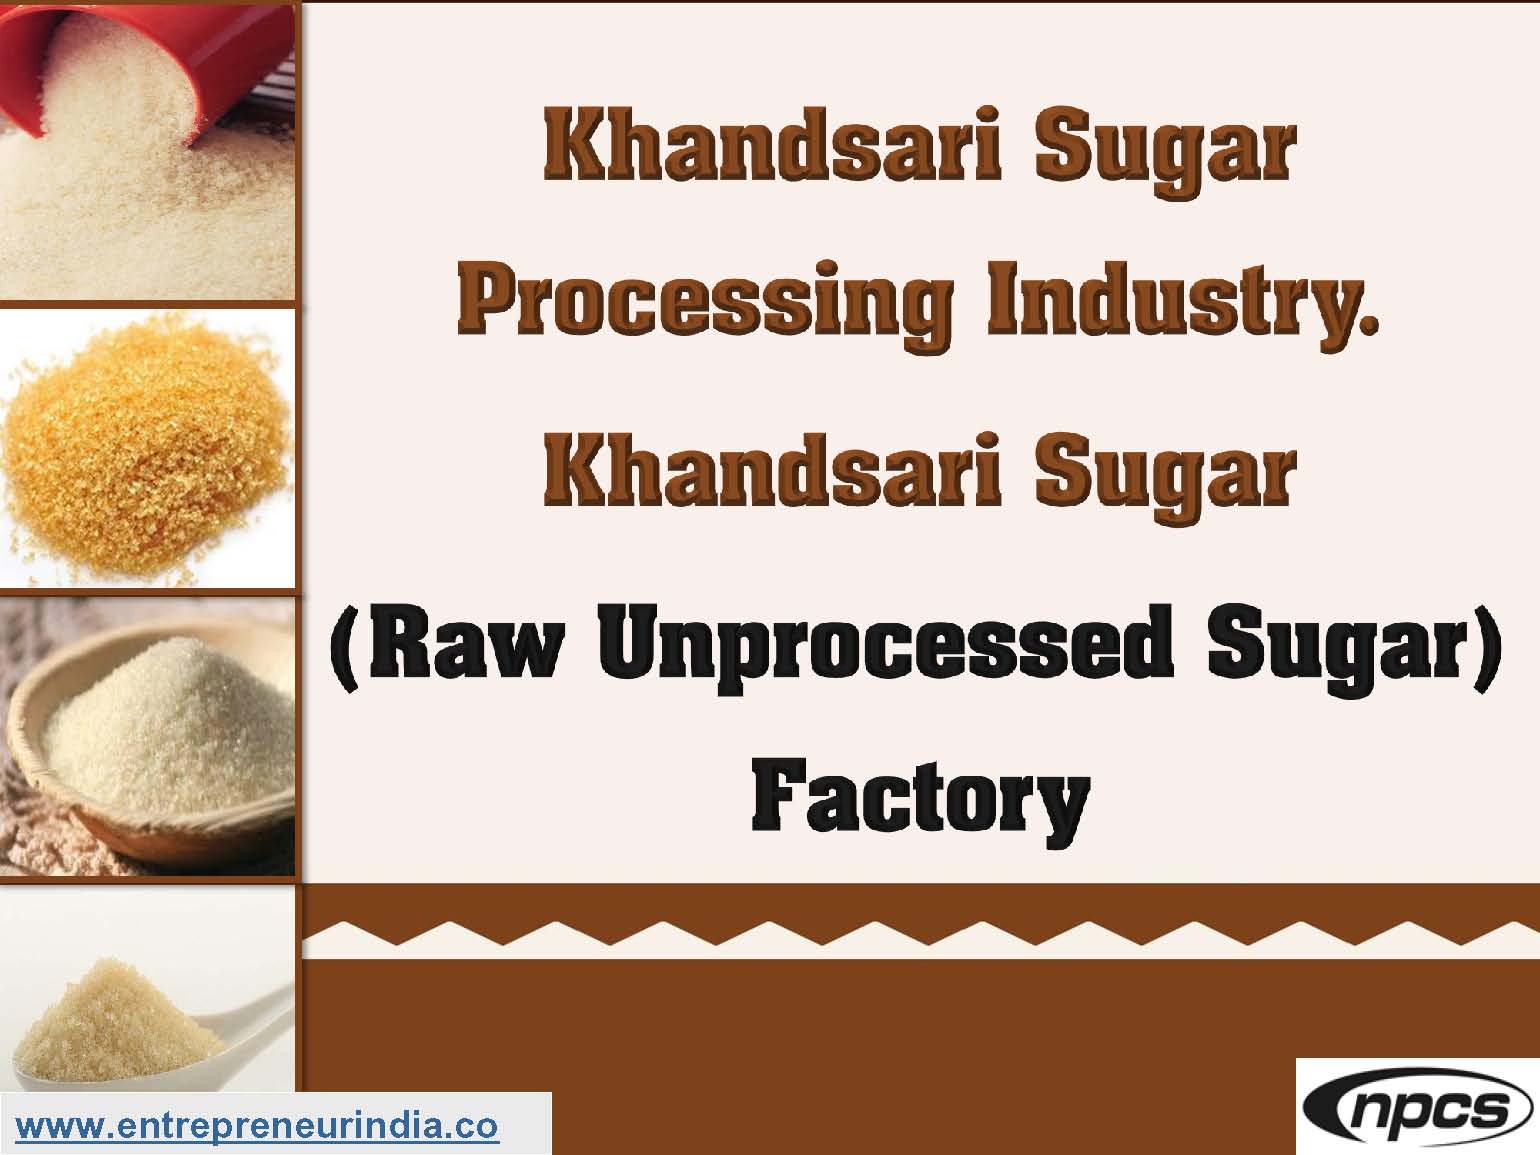 Khandsari Sugar Processing Industry